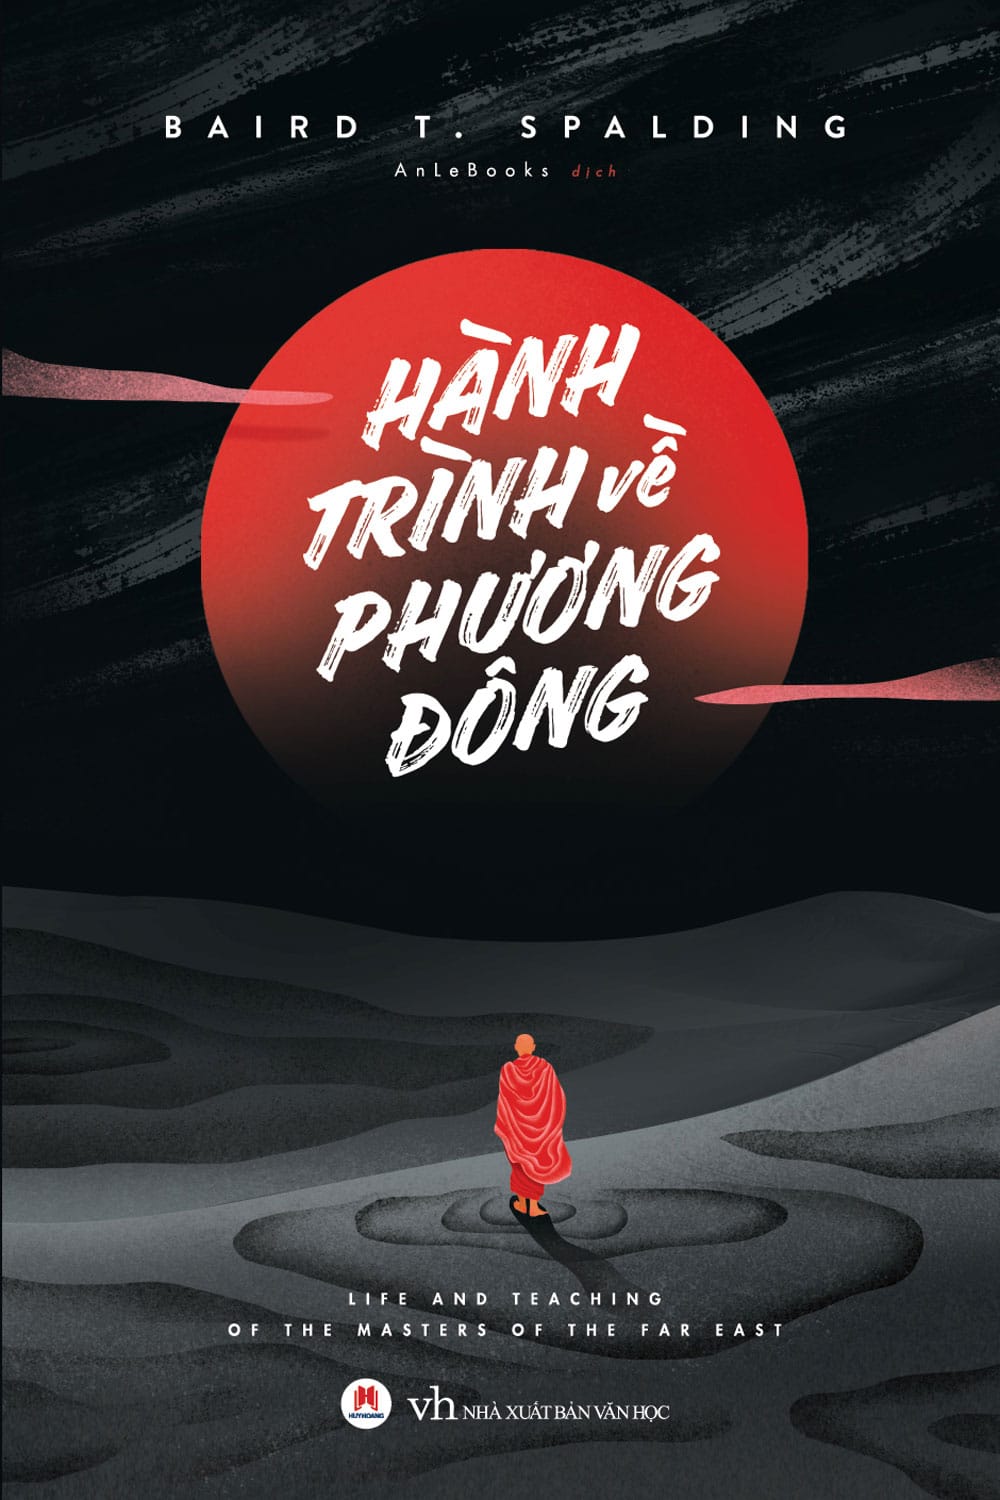 hanh trinh ve phuong dong - "Hành trình về phương Đông": Khi khoa học và minh triết hòa làm một